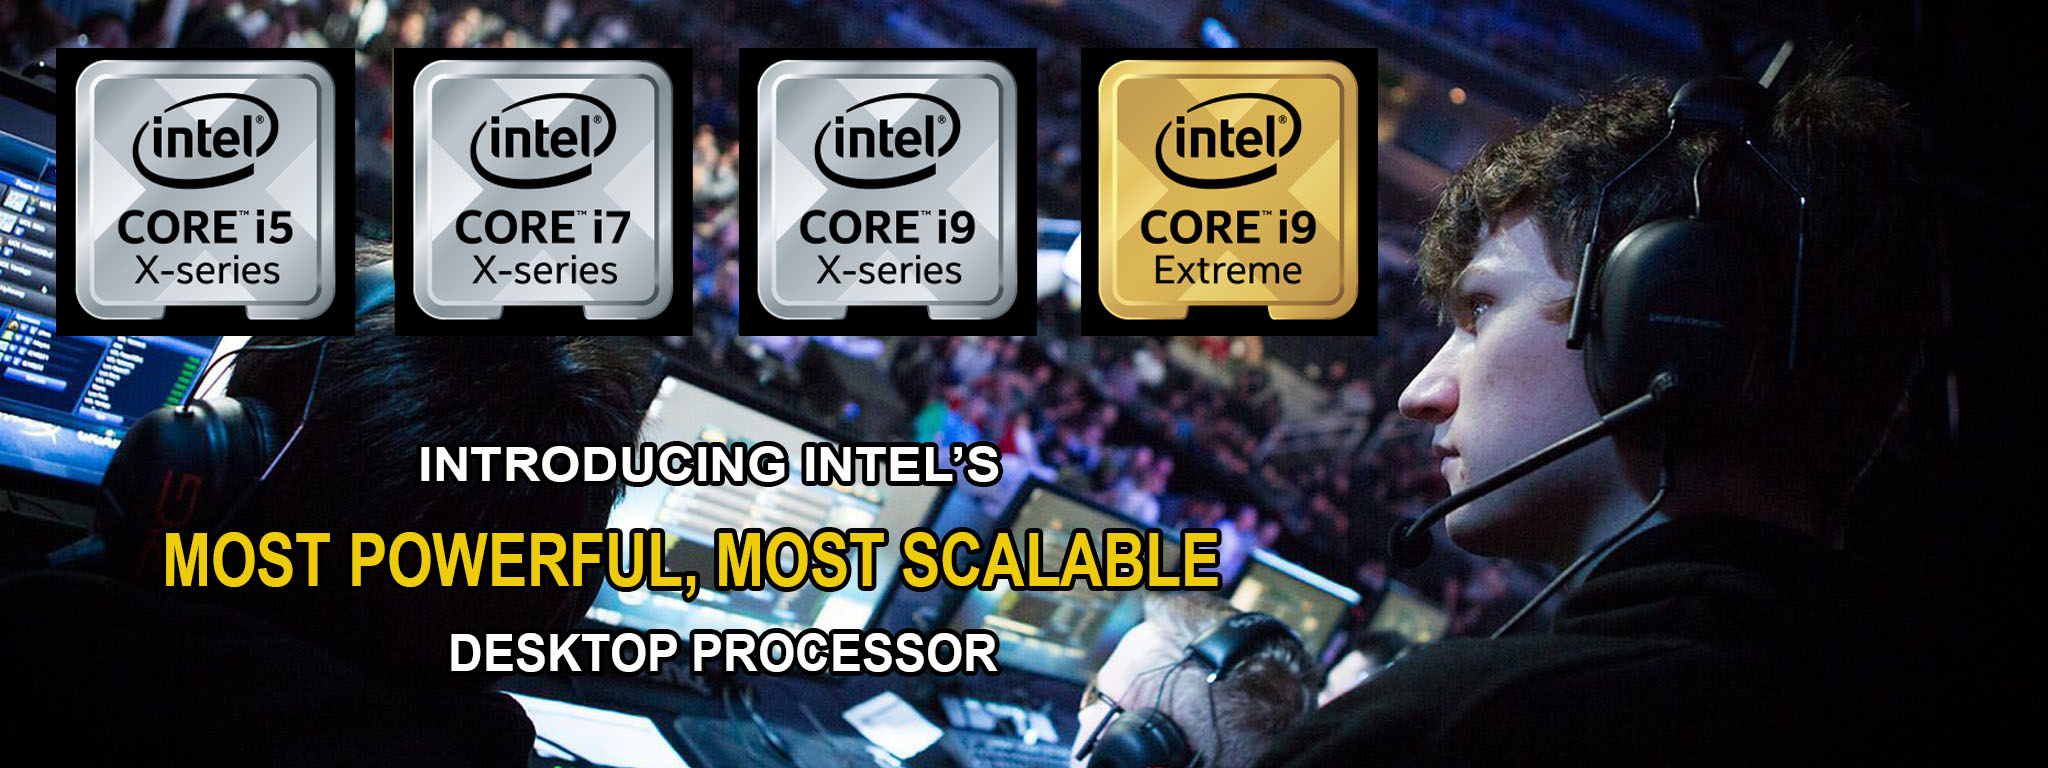 [QC]Trải nghiệm mọi cung bậc cảm xúc với dòng bộ xử lý Intel® Core™ X